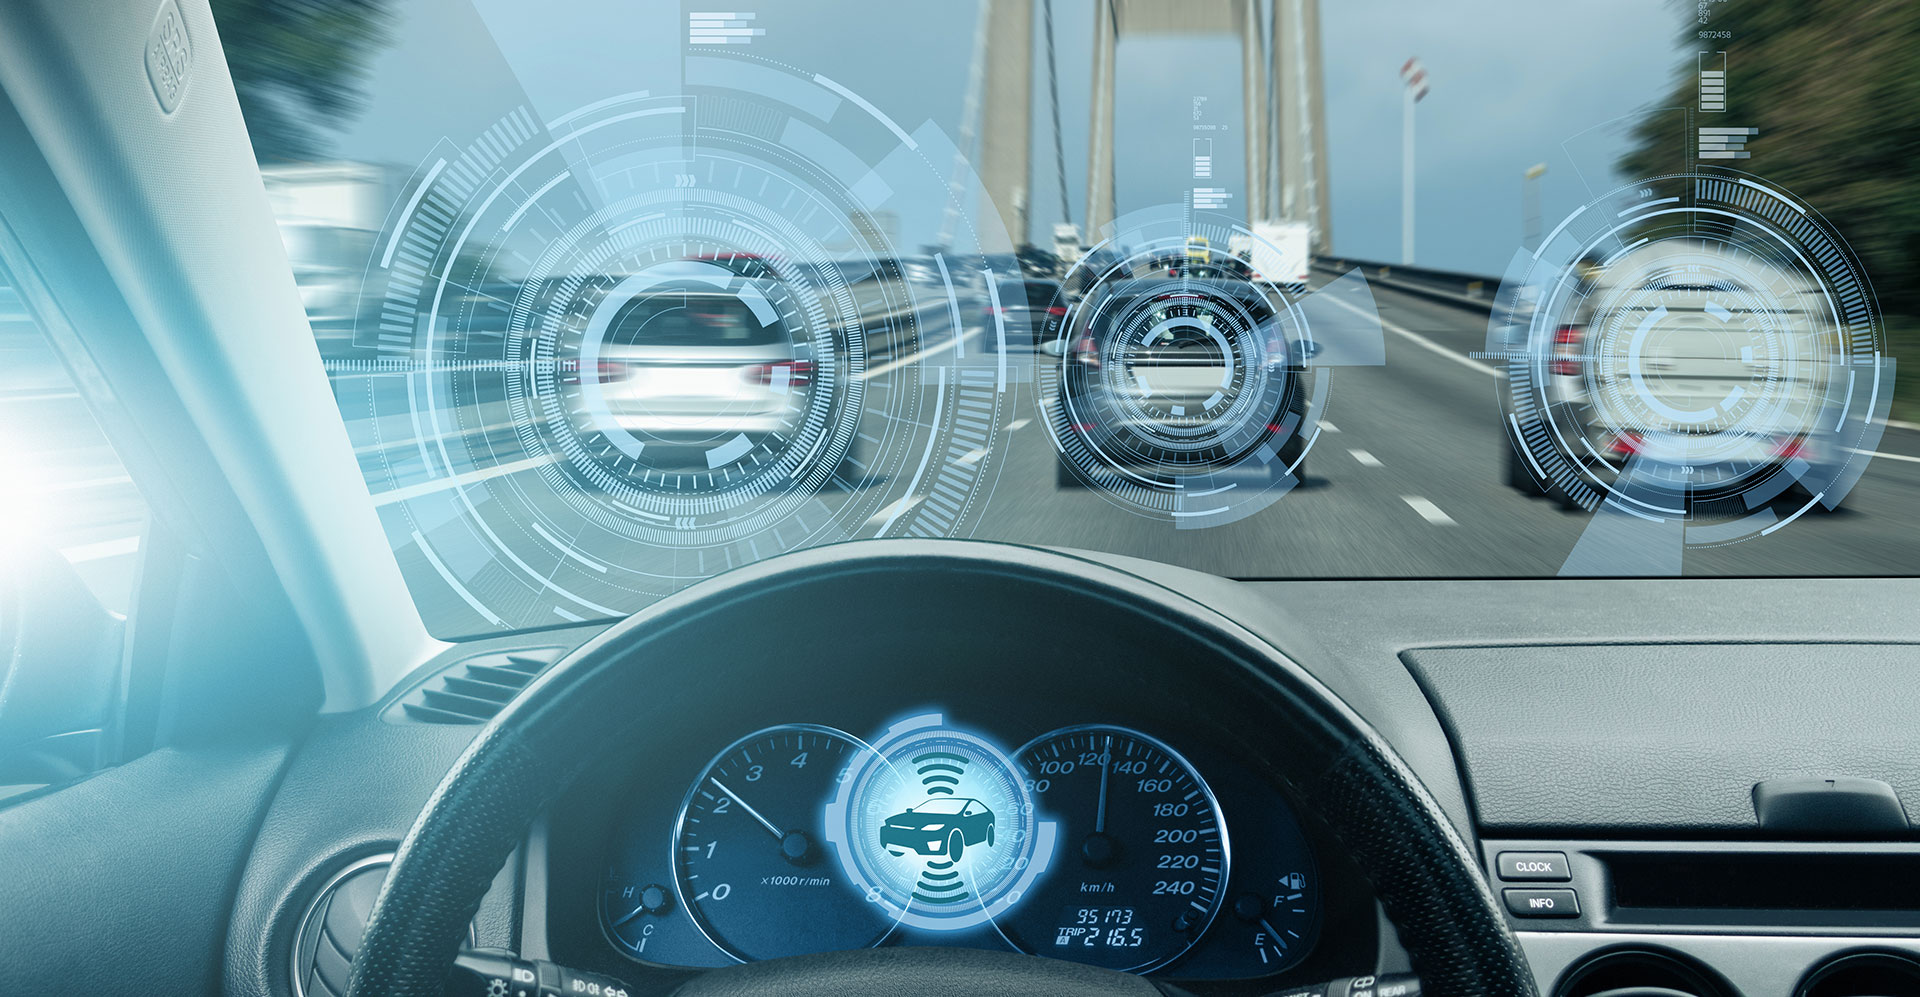 Autotrasporto e Tecnologia, Lumesia Insurance 